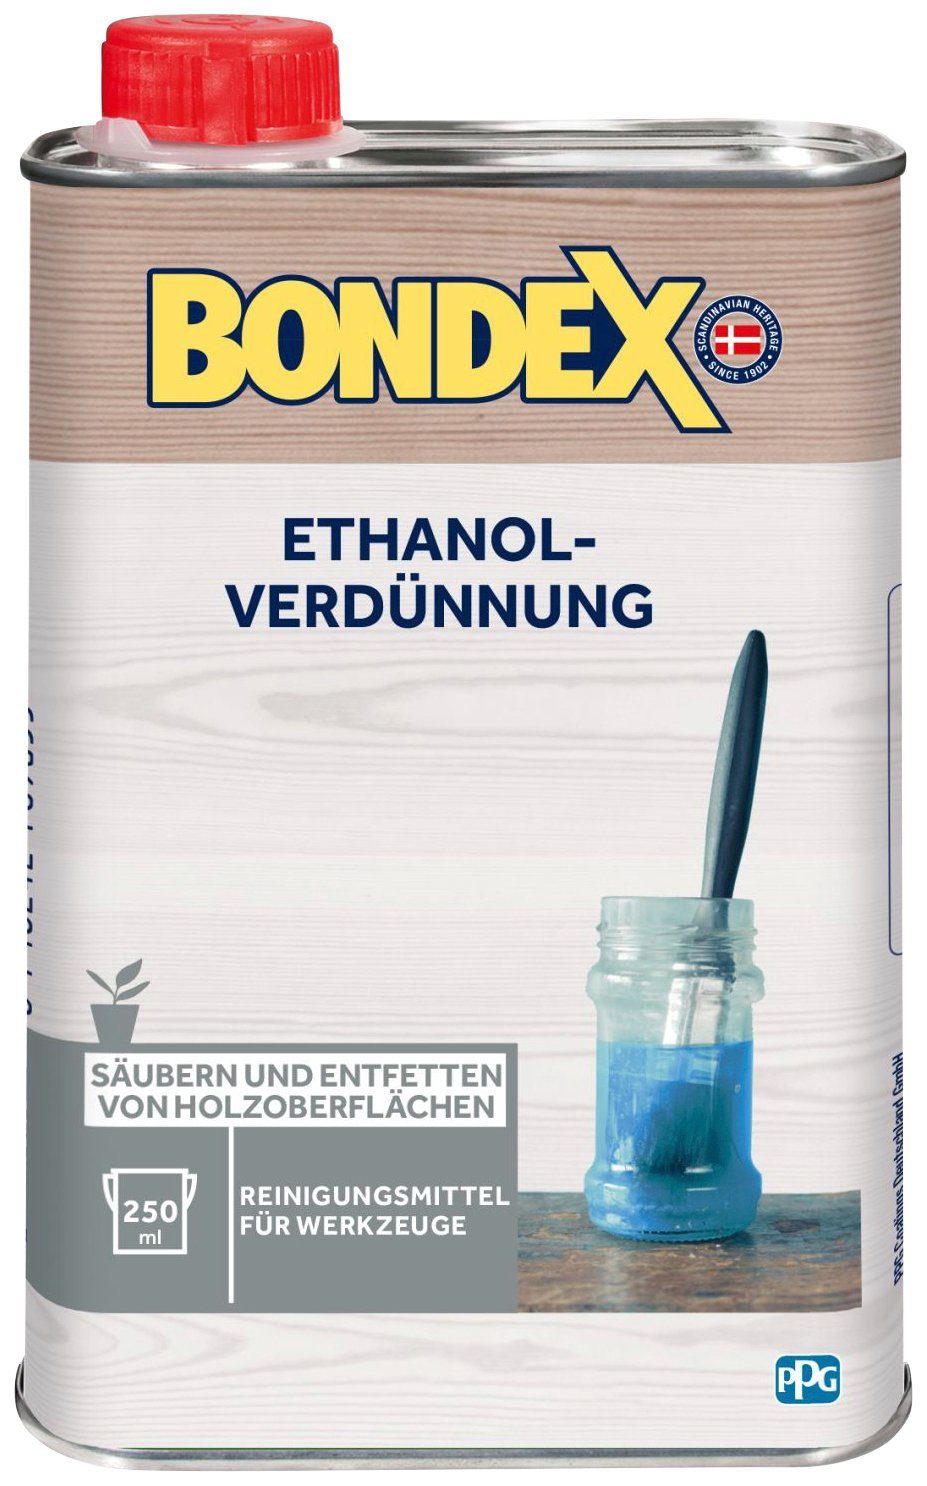 ETHANOL-VERDÜNNUNG, l Bondex Terpentinersatz 0,25